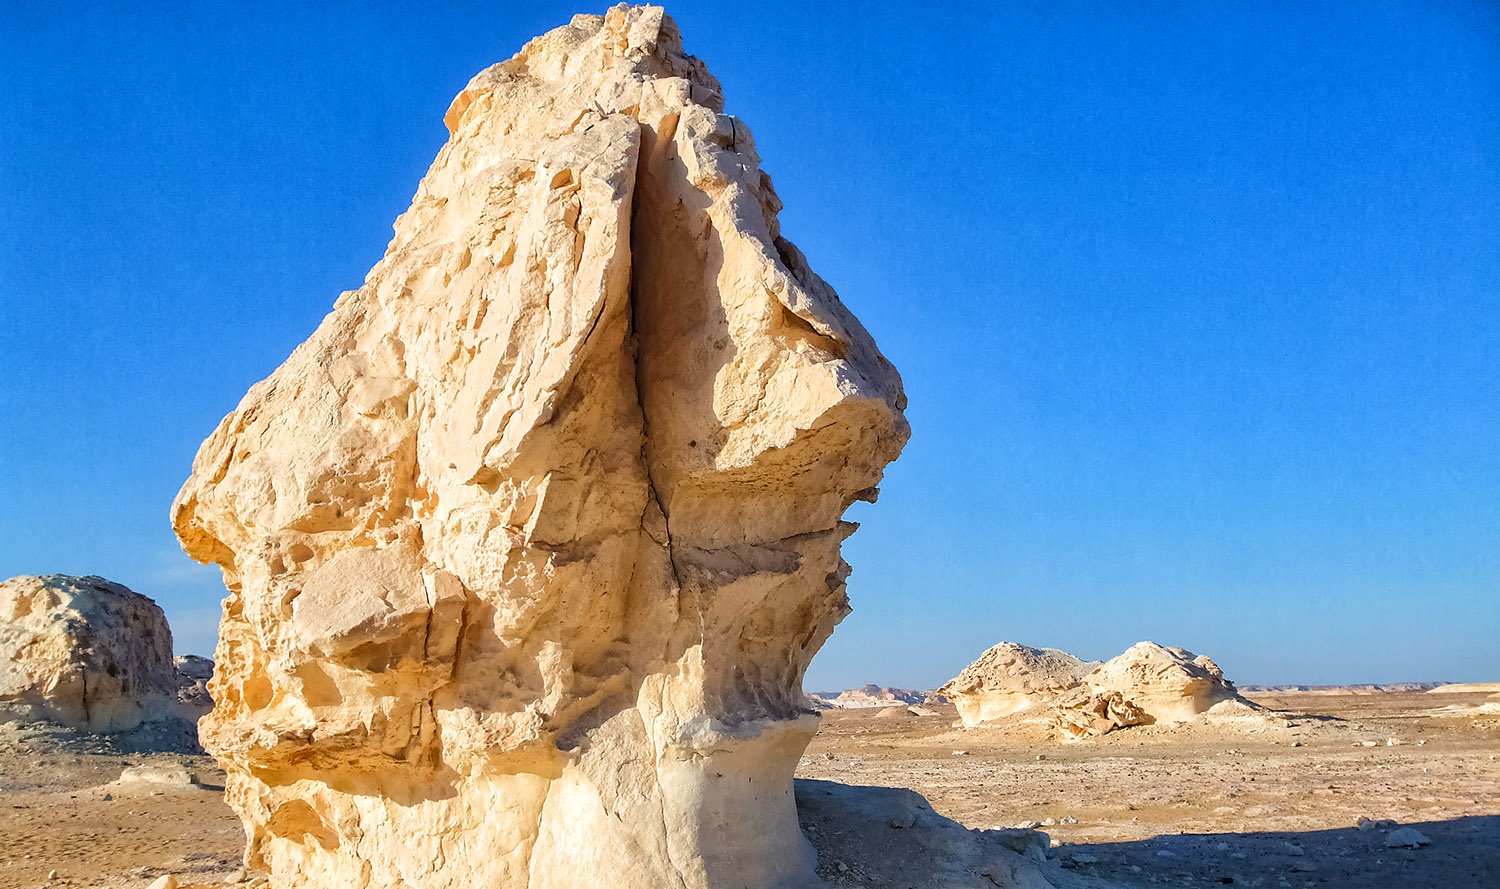 エジプト白砂漠、大地が創造した奇岩